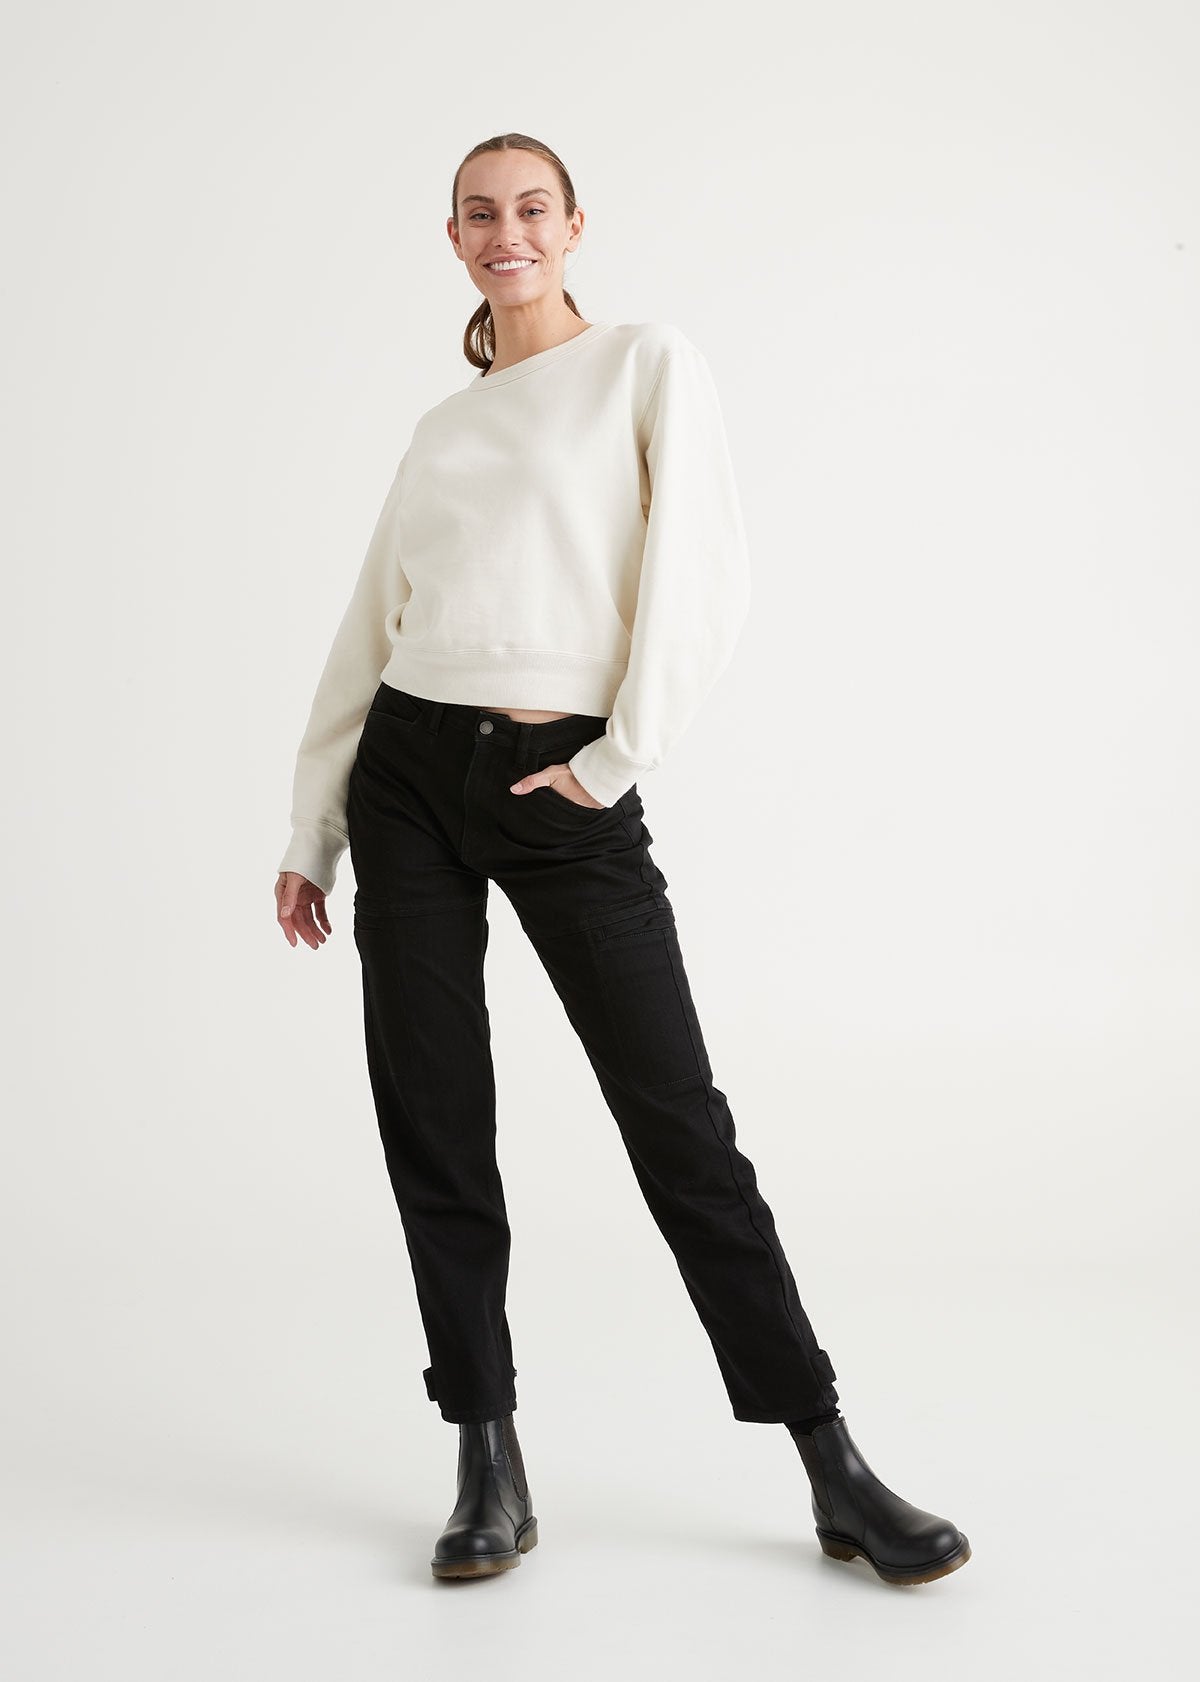 Yyeselk Women's Fleece Lined Jeans for Women Winter Warm Flannel Lined  Jeans Womens High Waisted Skinny Stretch Pants 